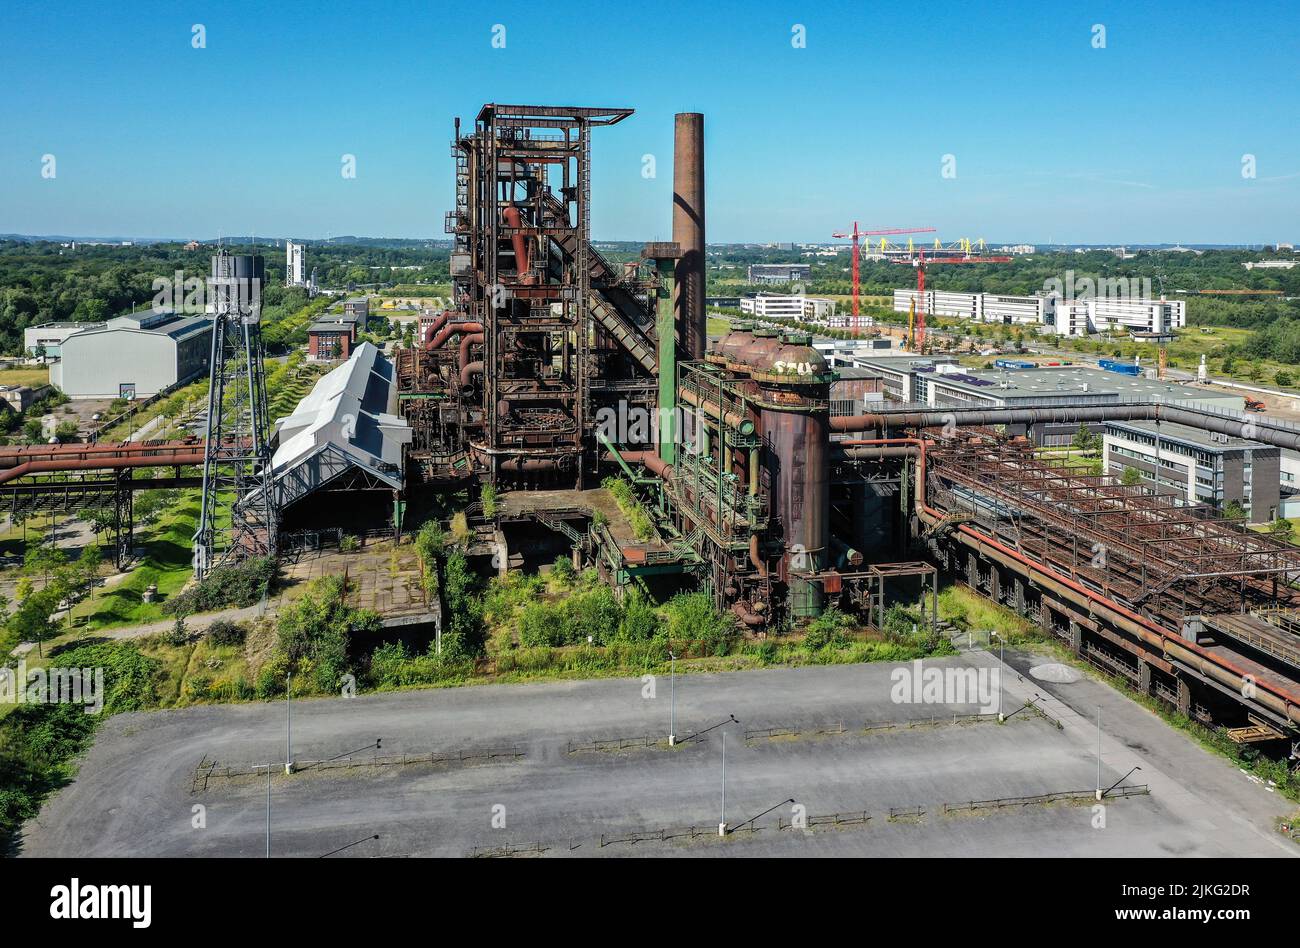 23.05.2022, Germania, Renania settentrionale-Vestfalia, Dortmund - stabilimento di altoforno di Phoenix West. Dopo la chiusura del vecchio impianto di altoforno di Hoesch nel 1 Foto Stock